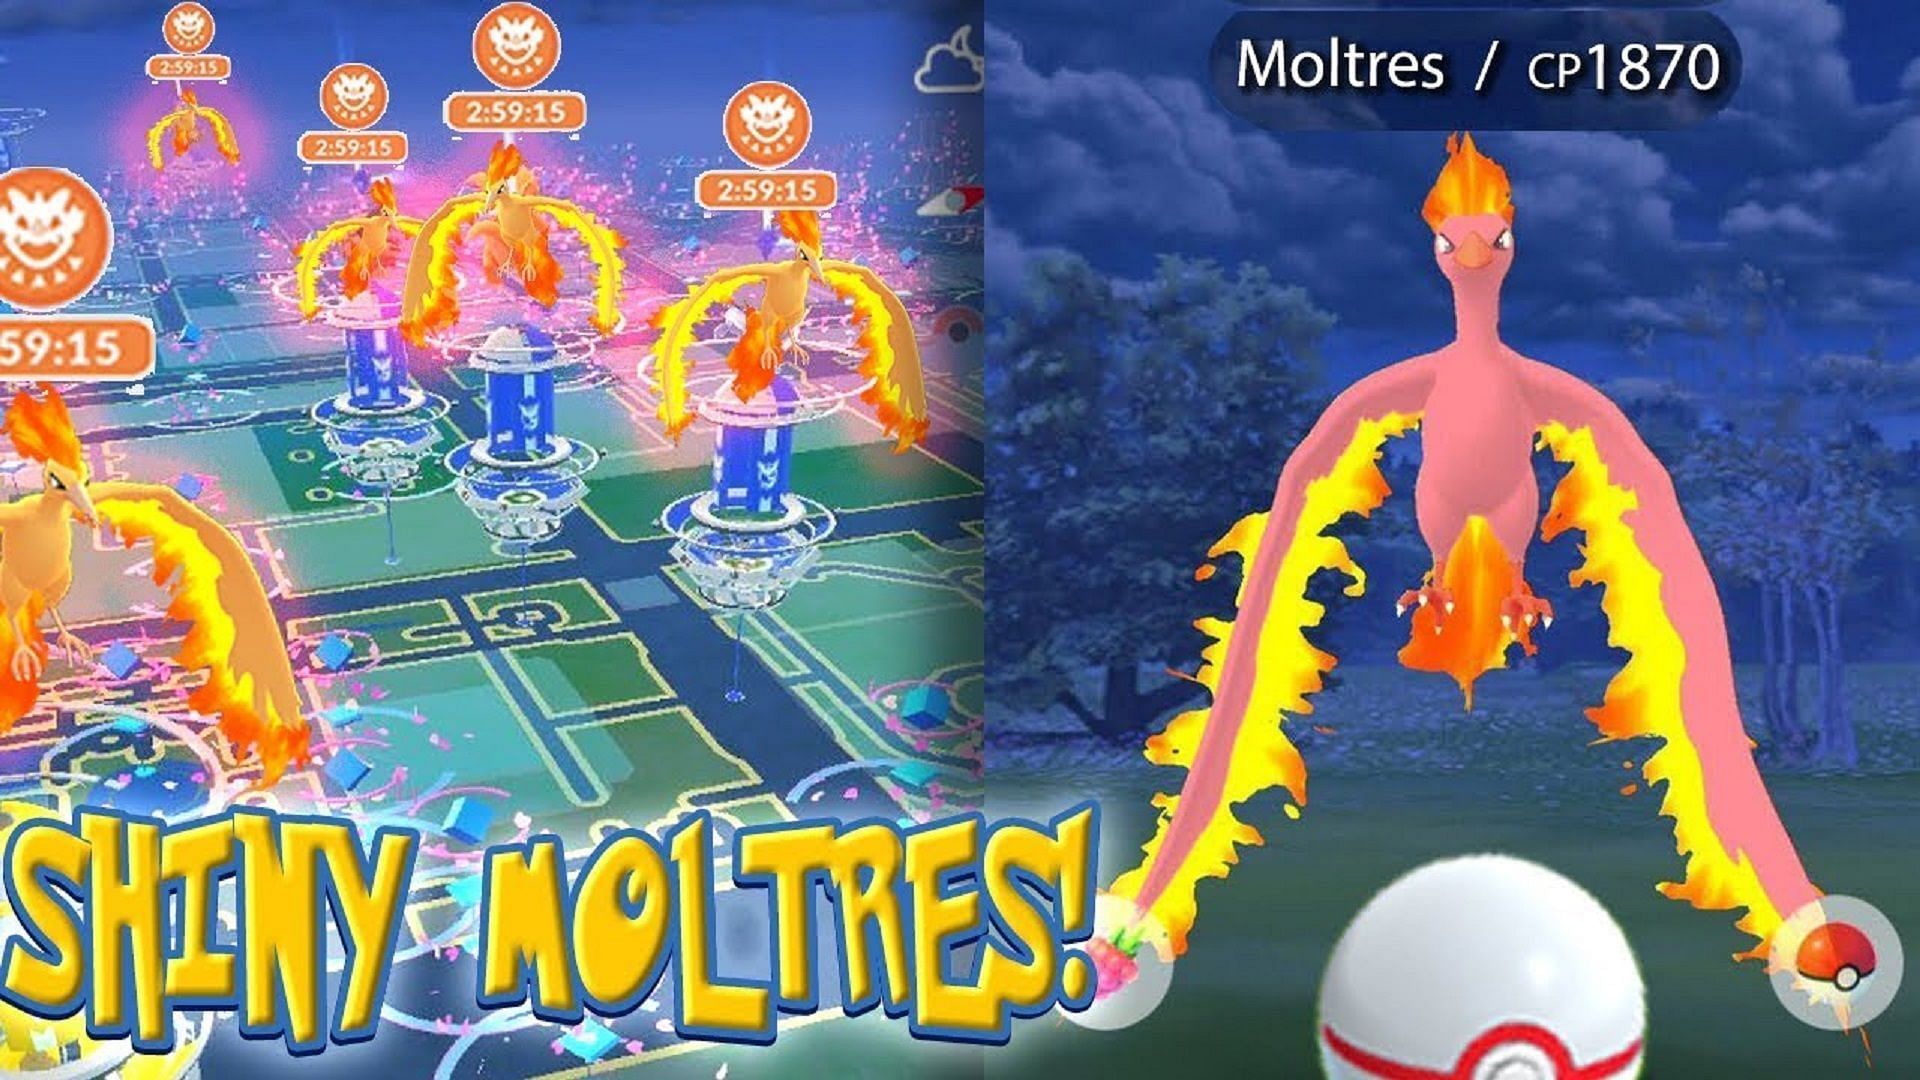 Pokemon GO Shiny Moltres News: How to catch Shiny Moltres with